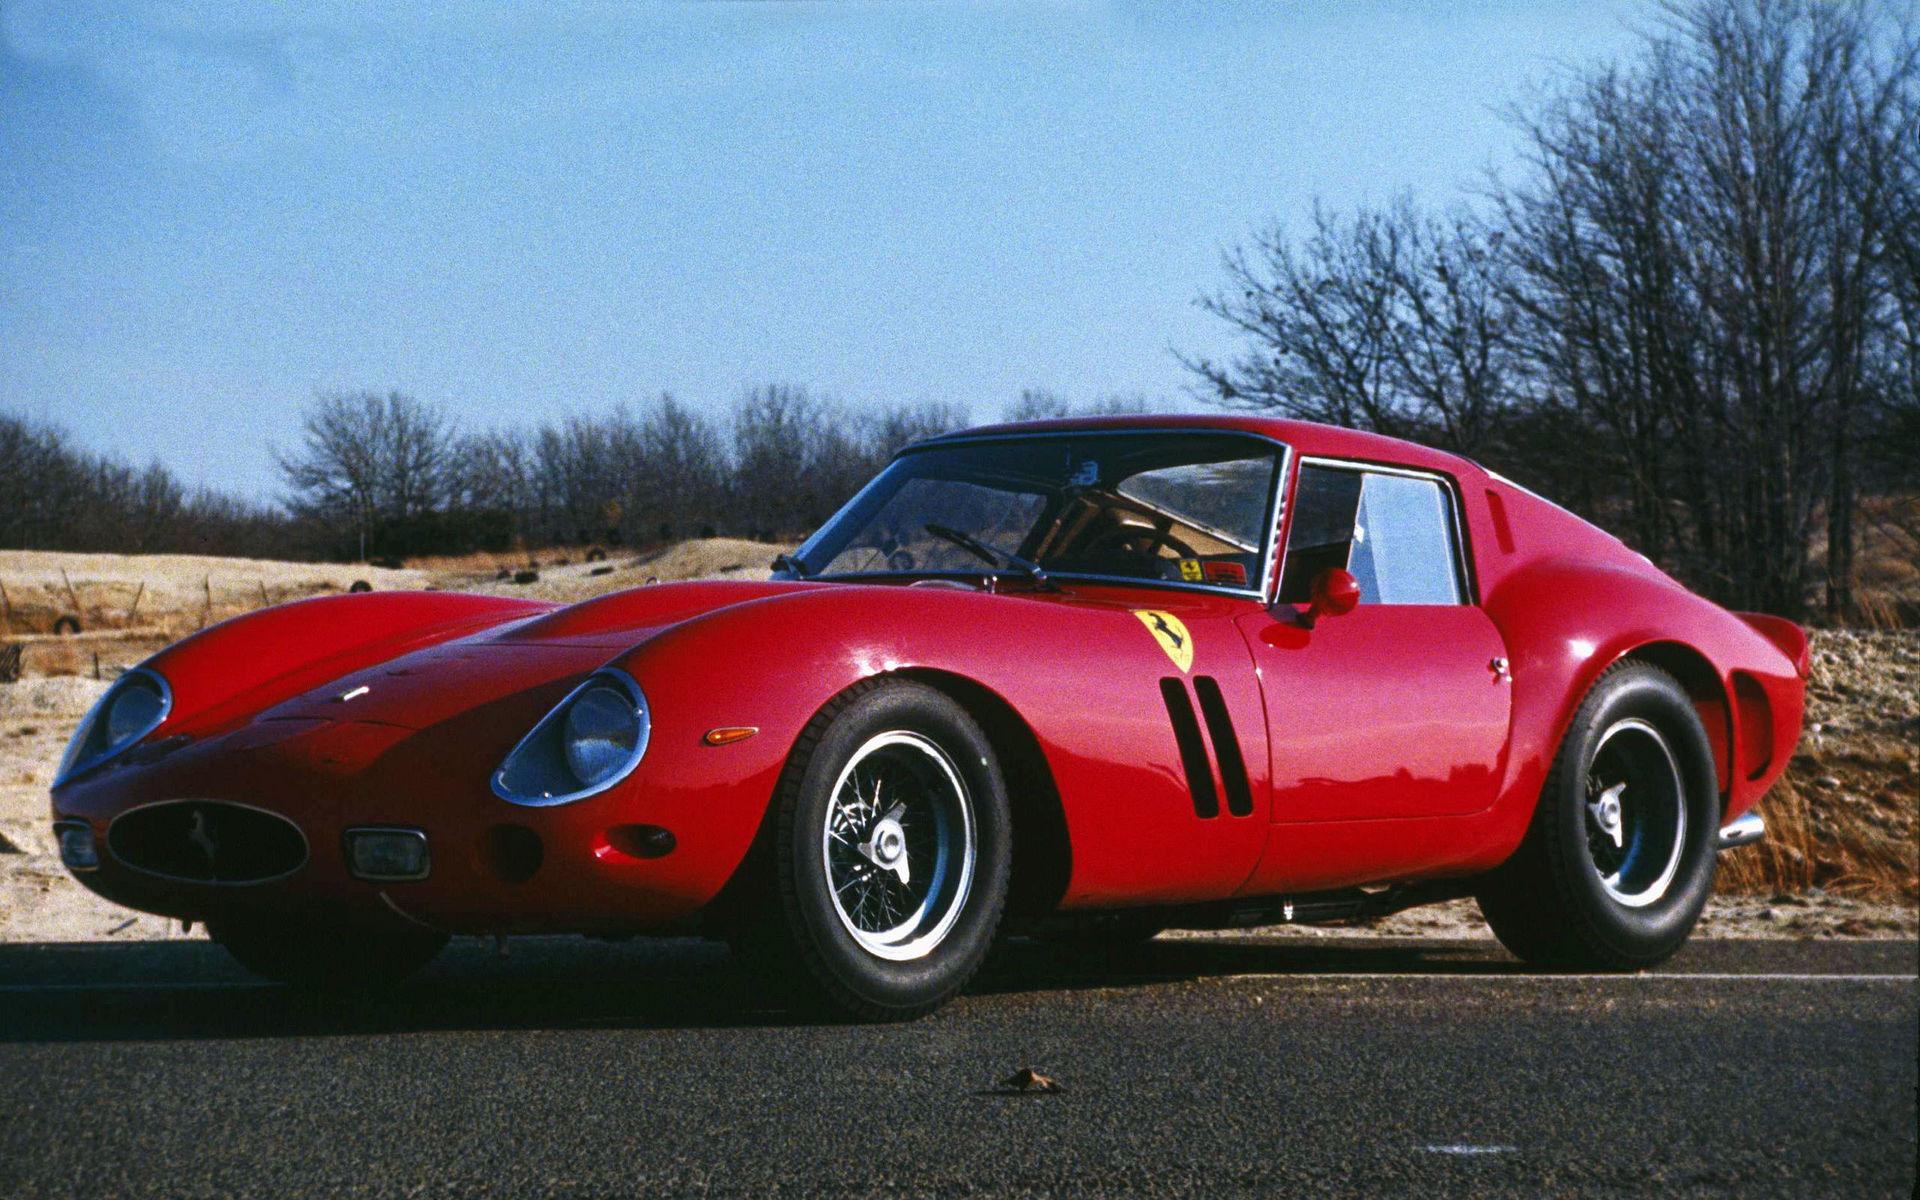 En riktig klassiker - en Ferrari 250 Gran Turismo från 1962 - som han äger genom sitt bolag.